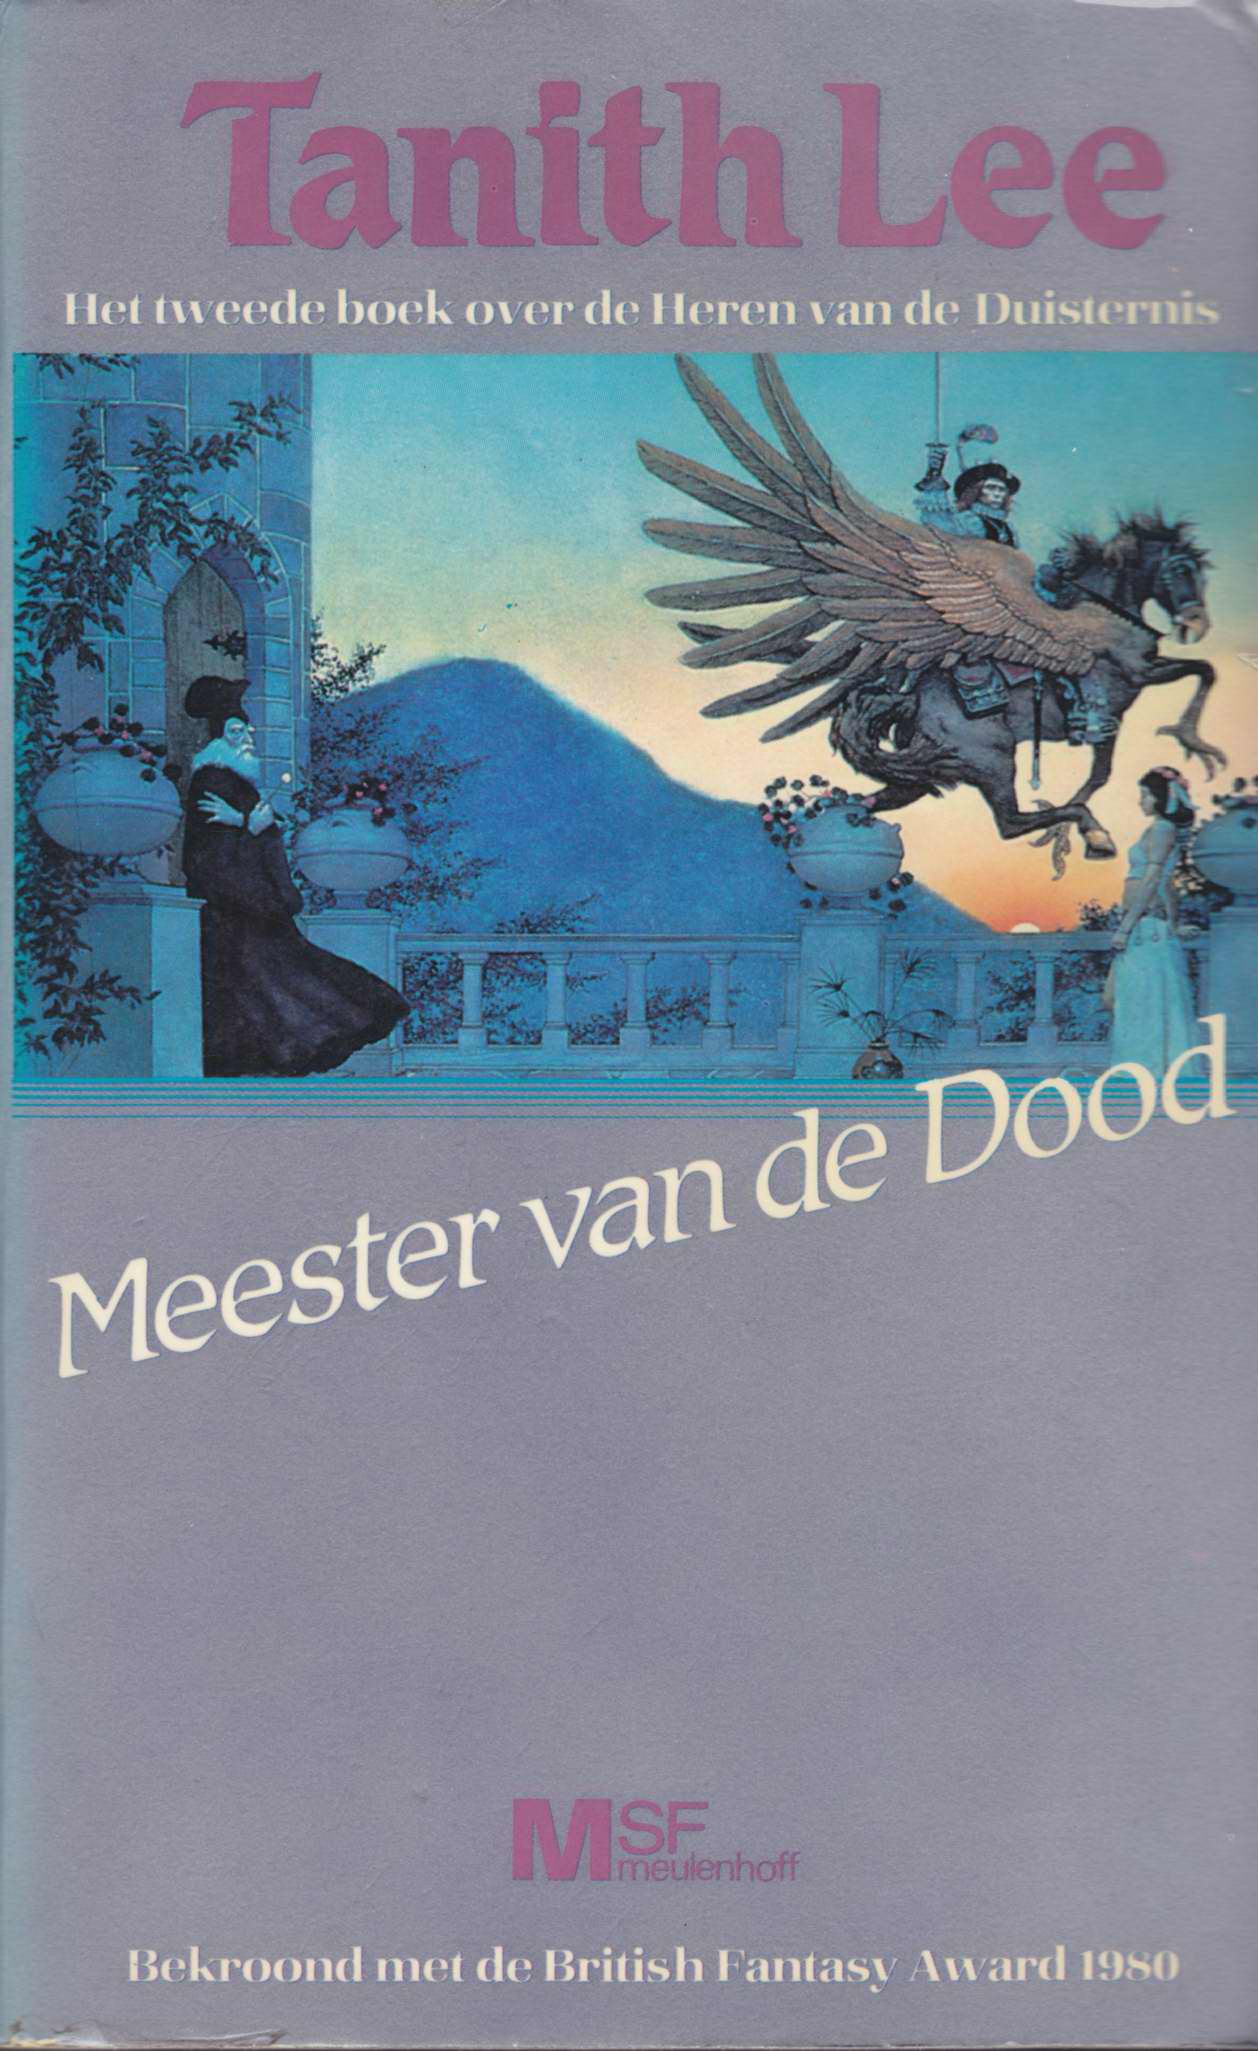 Meester Van De Dood (Death's Master)